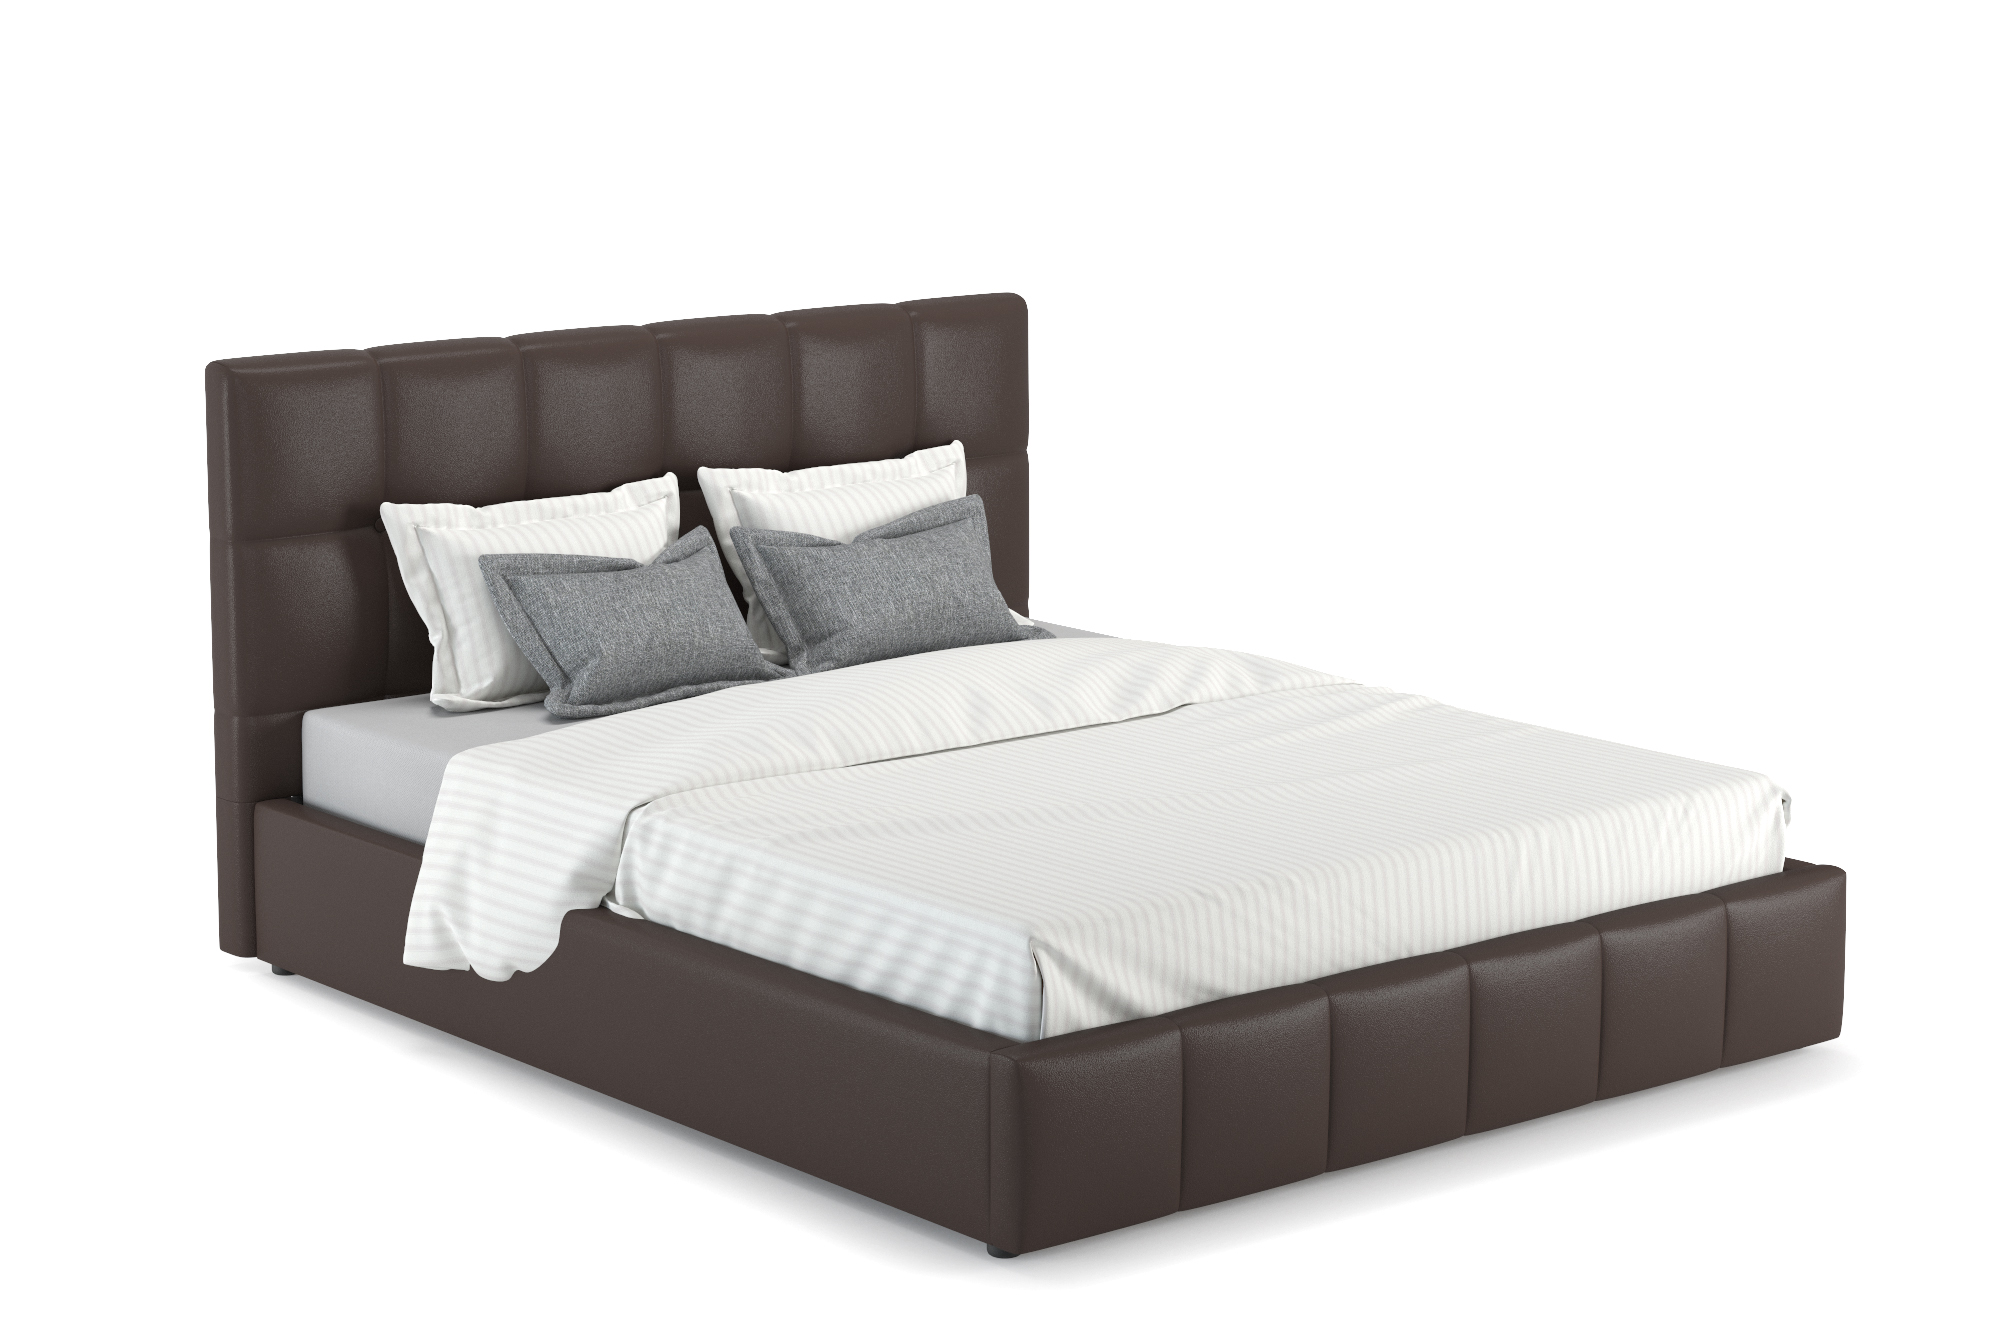 Кровать интерьерная Хлоя Осн Пегасо шоколад (темно-коричневый), 170х212х105 см